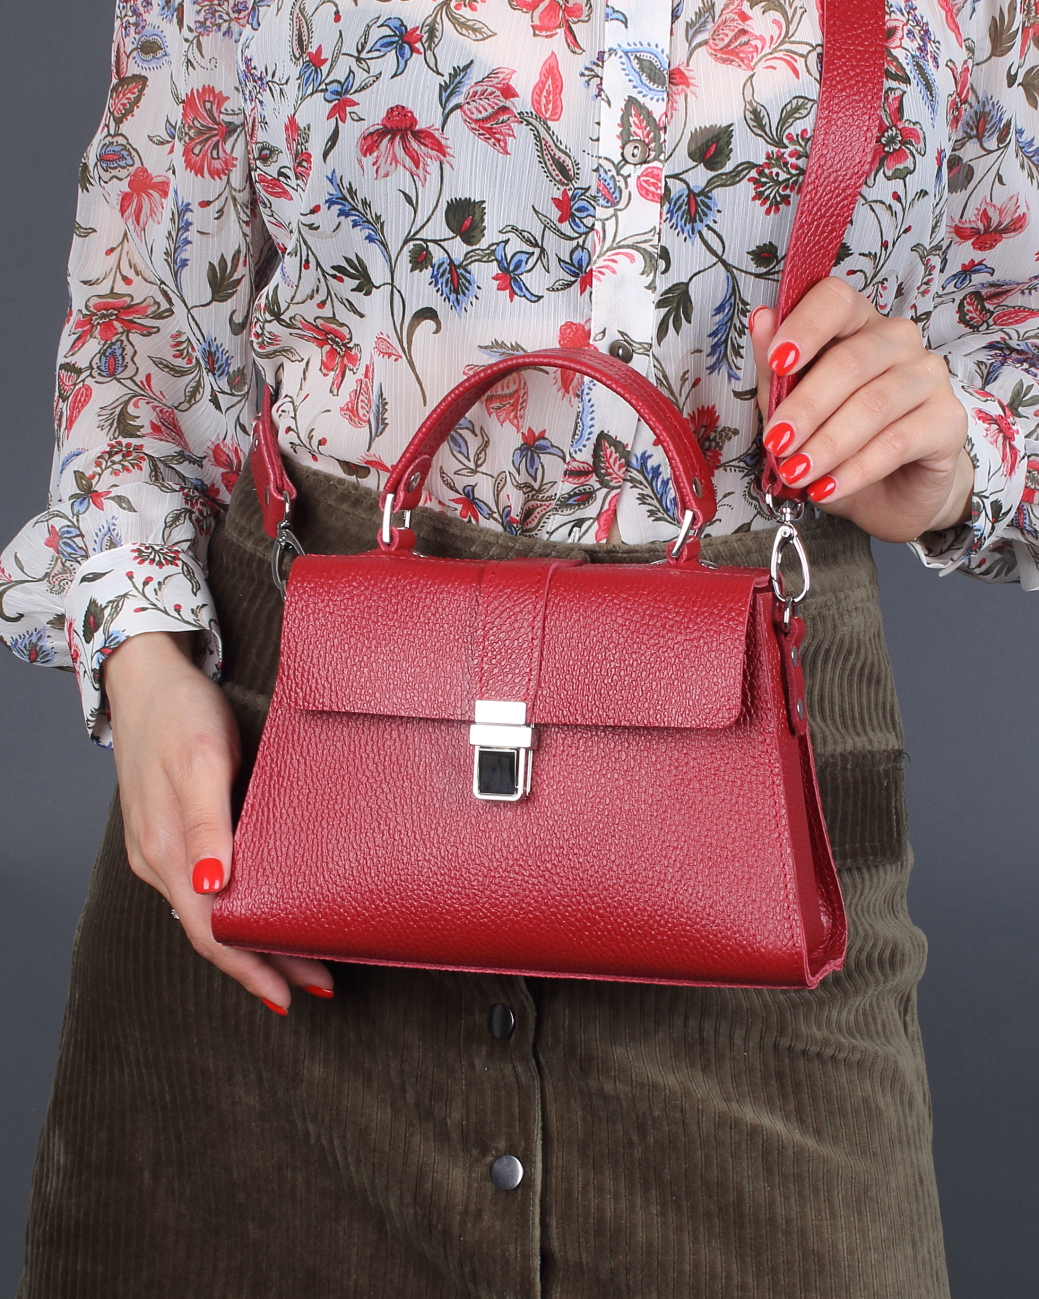 Женская сумка трапеция из натуральной кожи красная A023 ruby mini grain